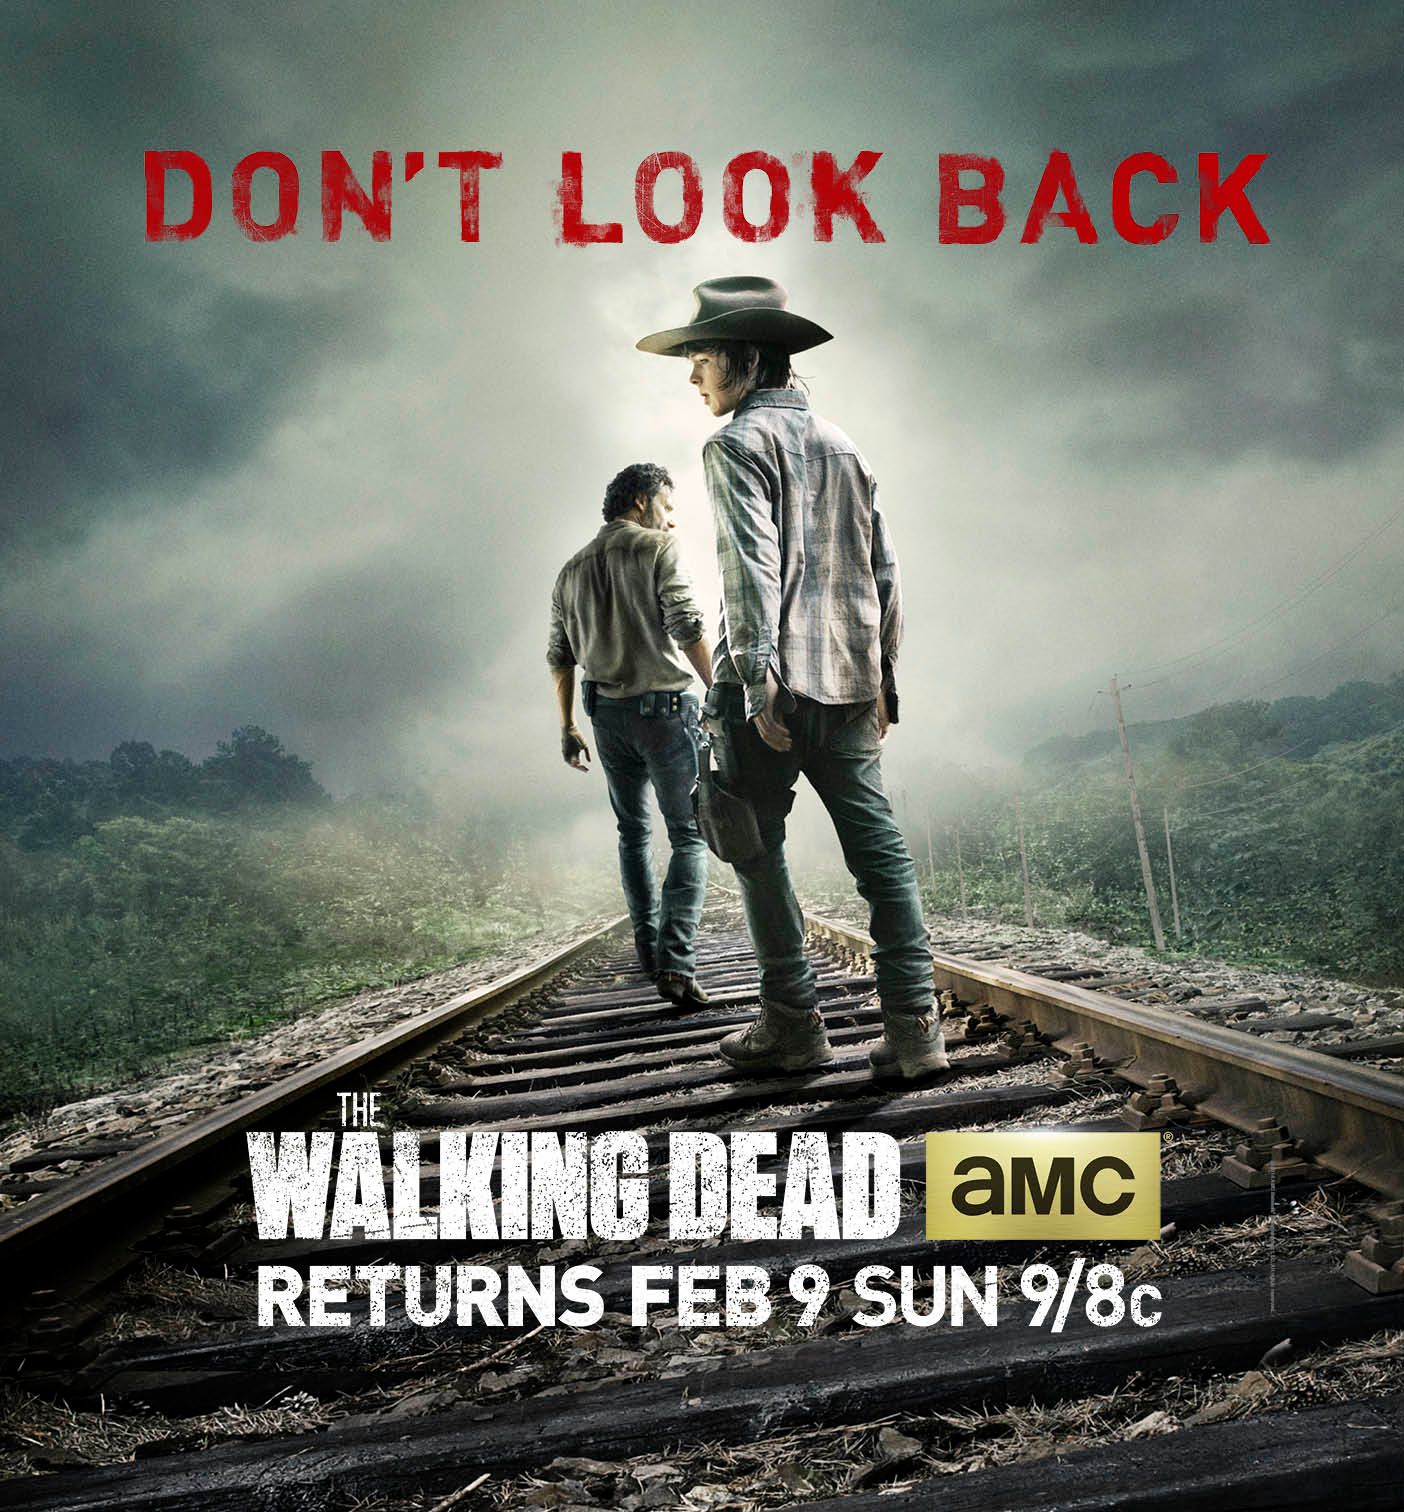 The Walking Dead Season 4 Mid-Season Premiere Poster